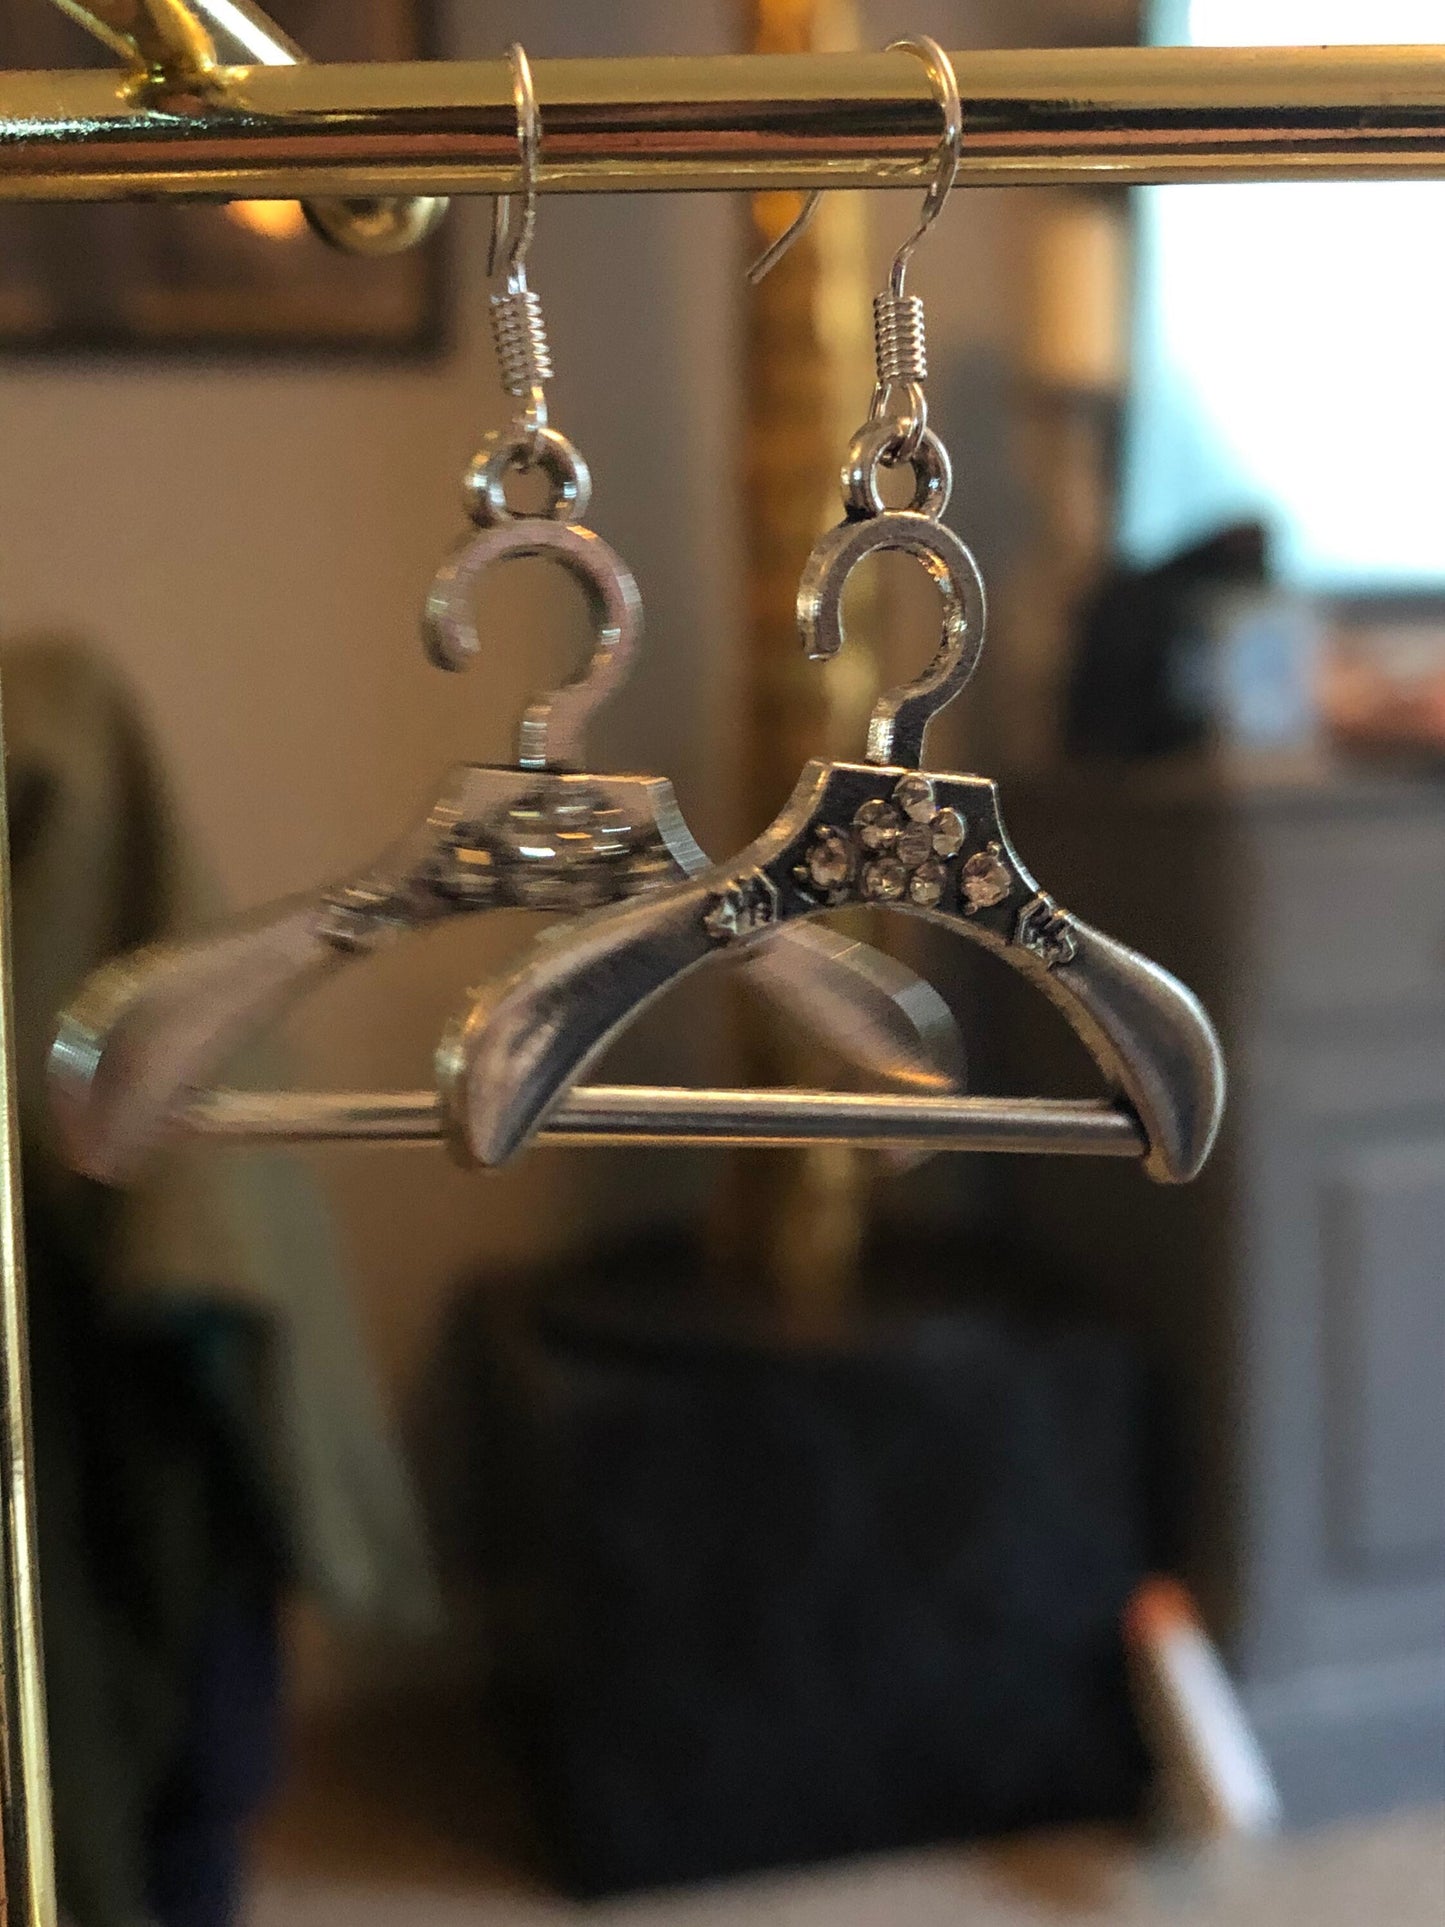 silver tone diamanté coat hanger drop earrings for pierced ears!